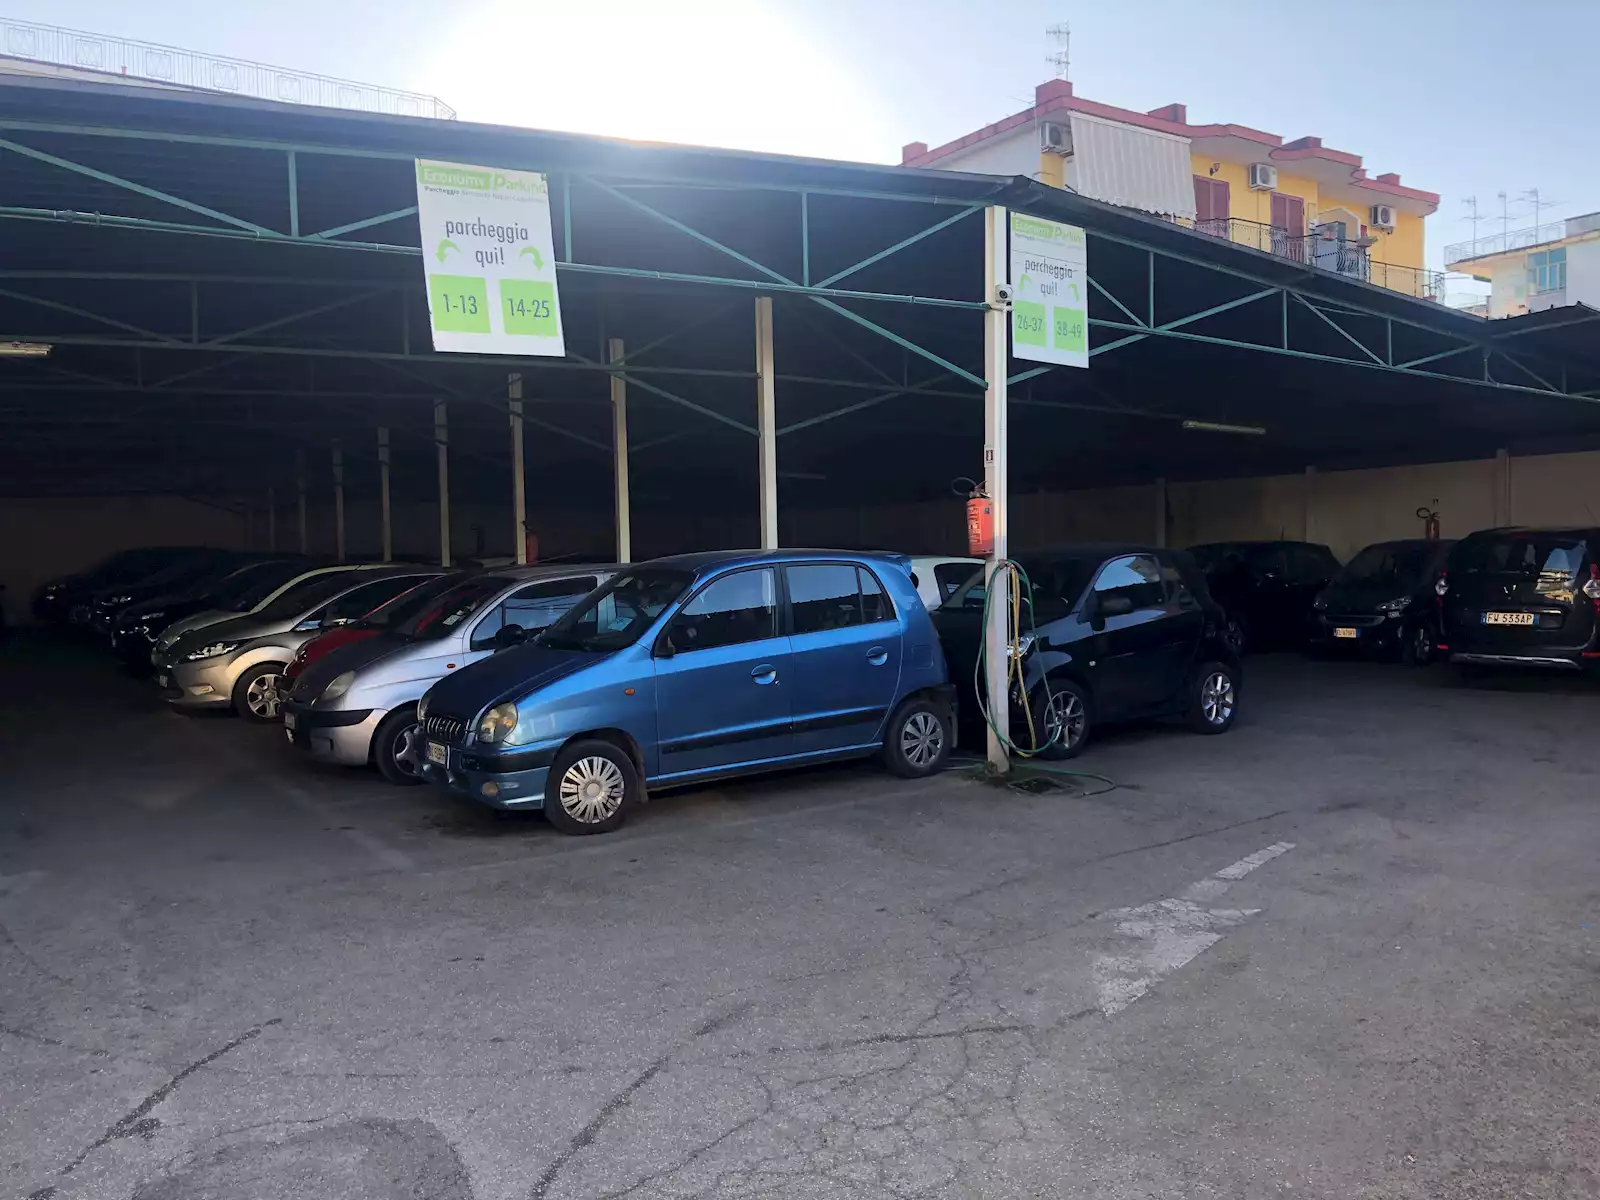 Economy Parking 1